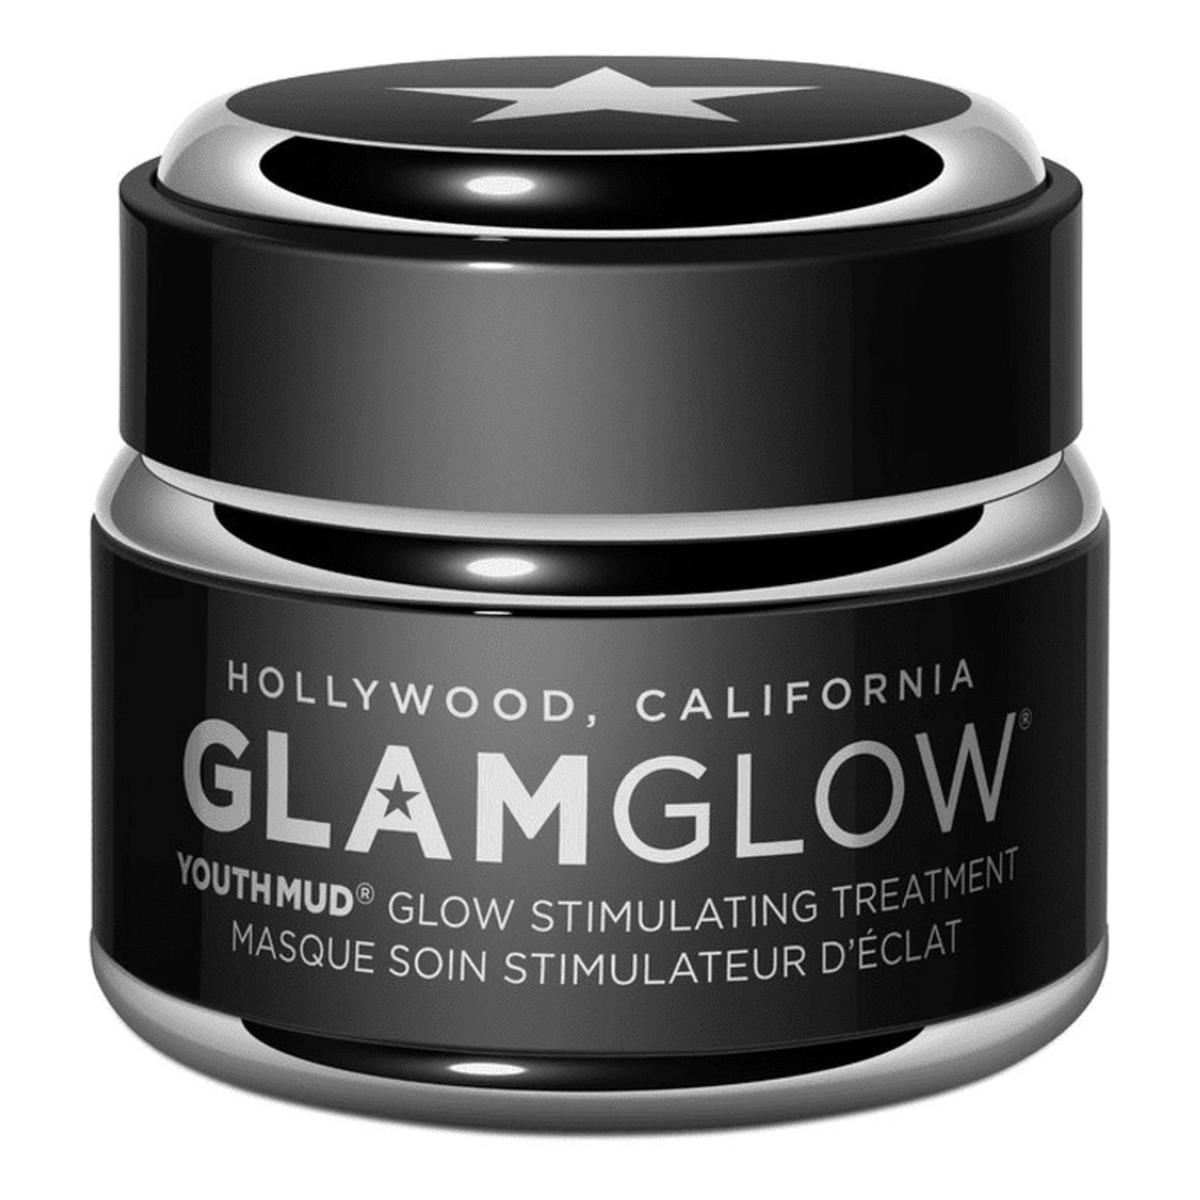 GlamGlow Youthmud Glow Stimulating Treatment Mask stymulująca maska zabiegowa 50g